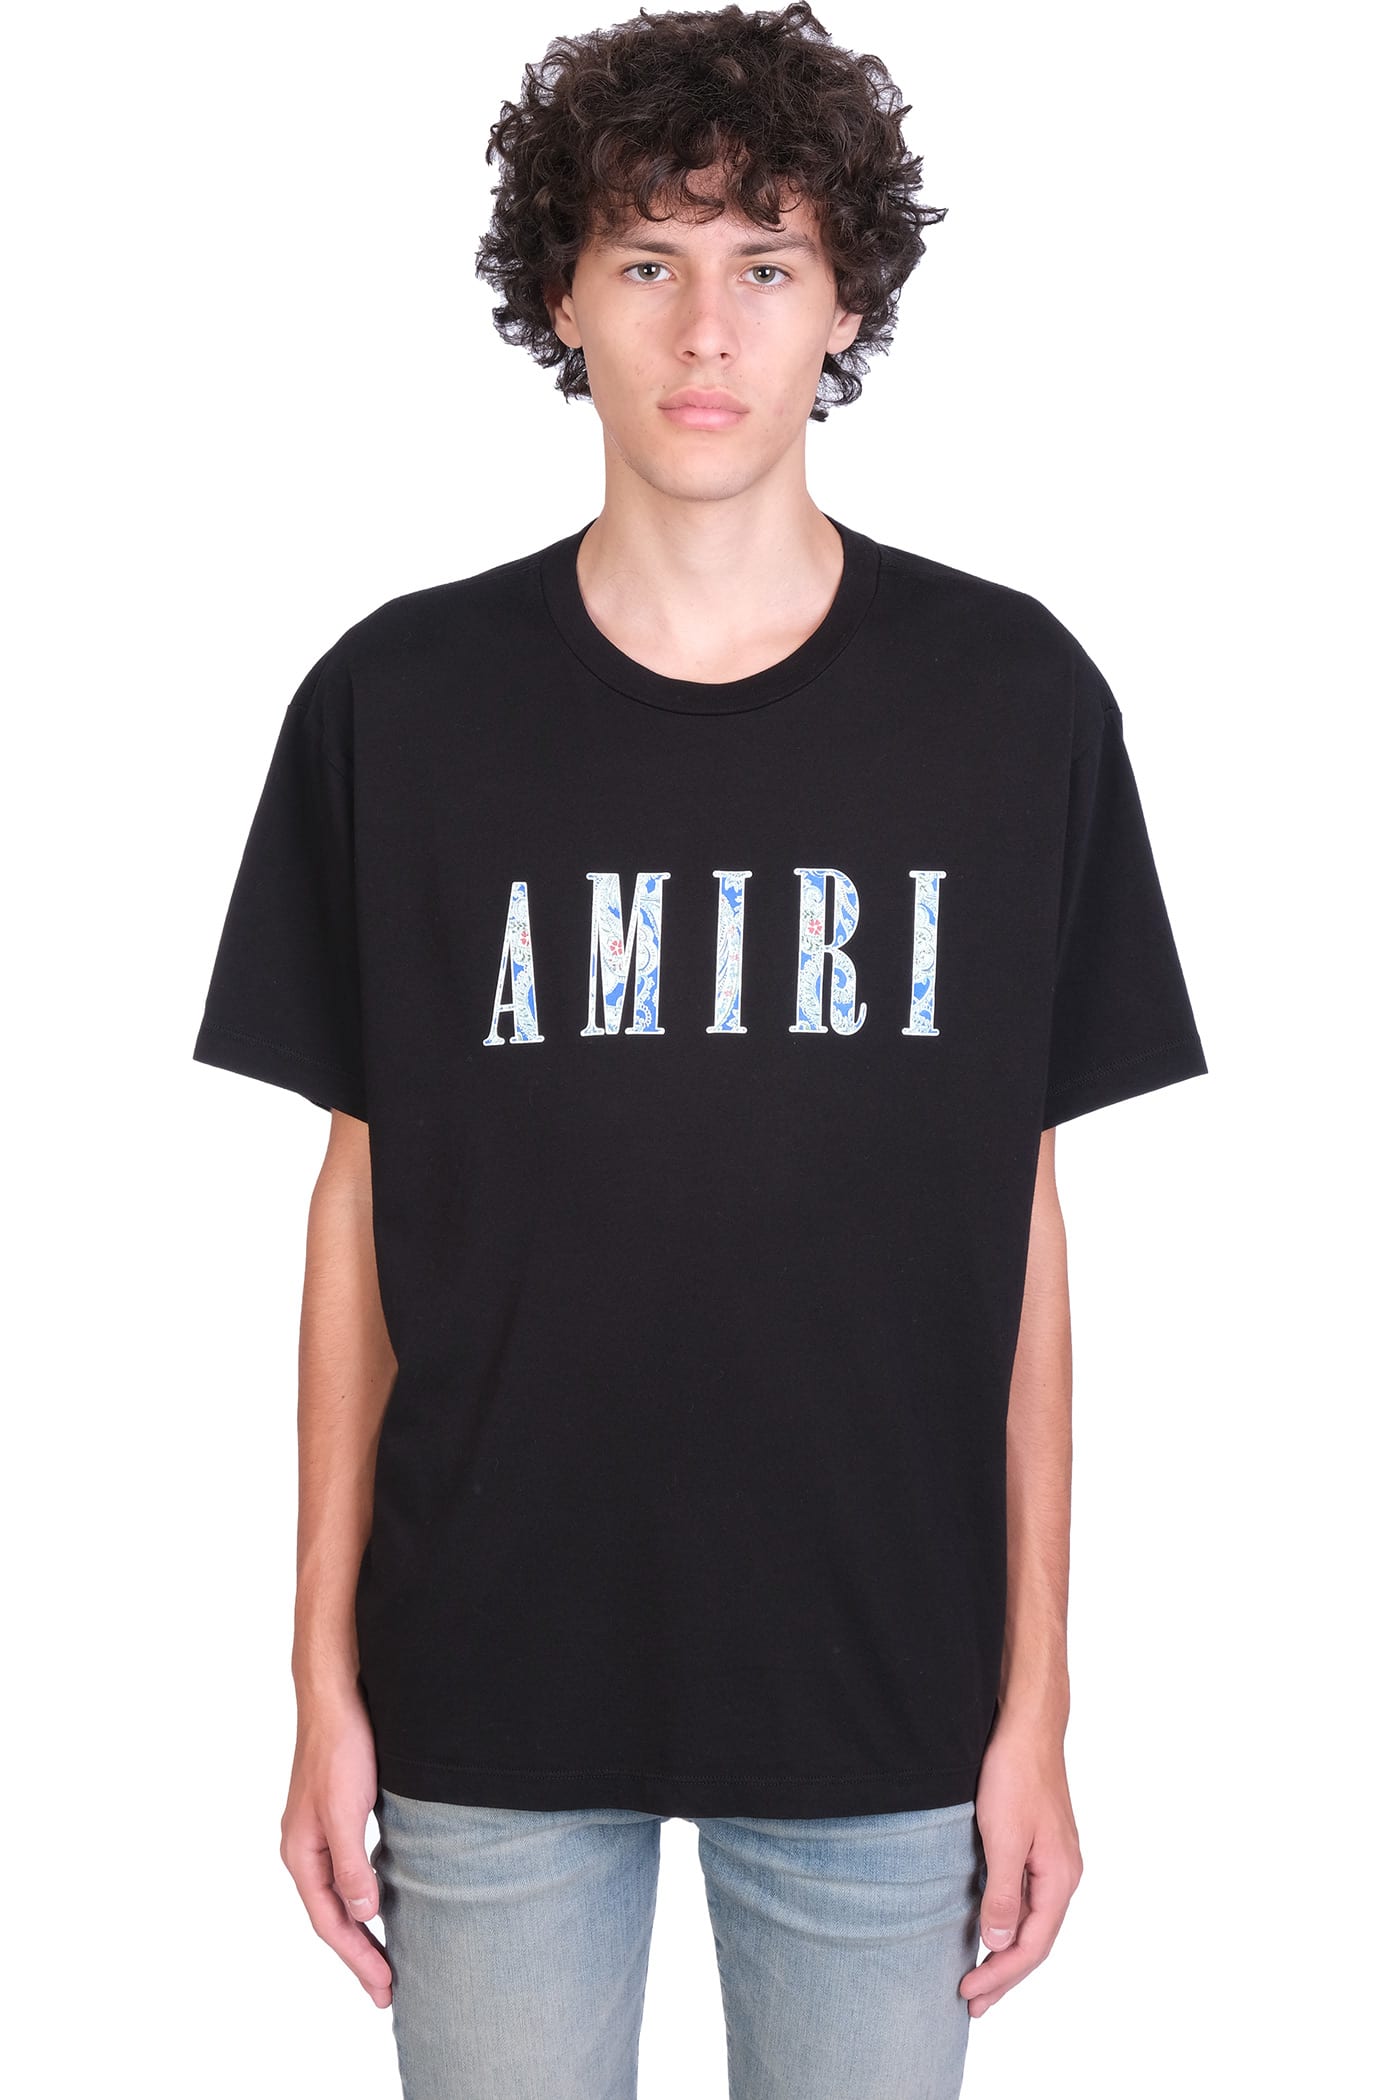 22500円商品 セールス 新品未使用AMIRIアミリTOKYO東京限定TシャツS